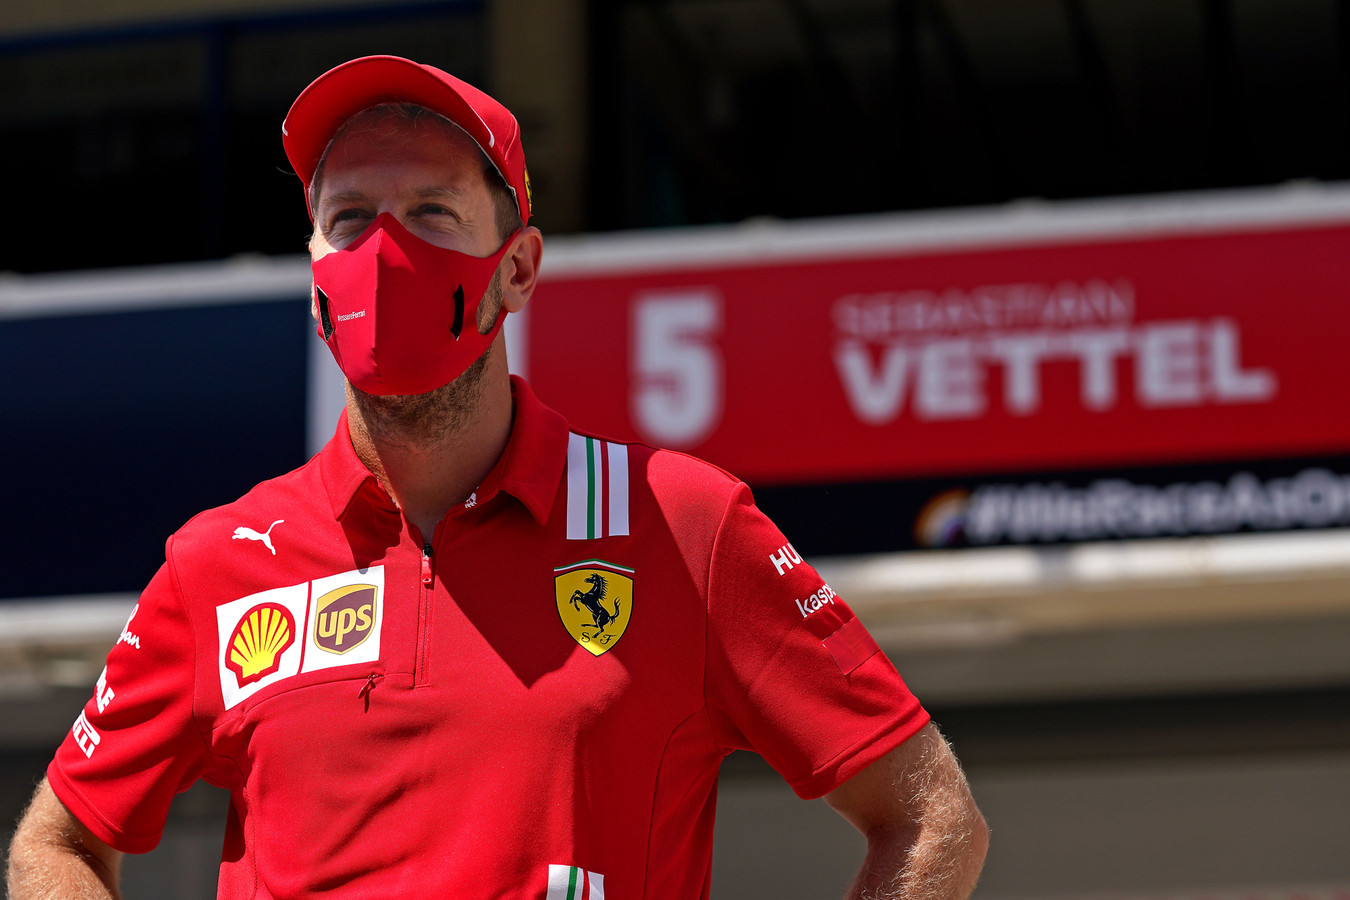 S. Vettelis: F-1 turi padaryti labai daug darbų, jei nori egzistuoti po dešimties metų